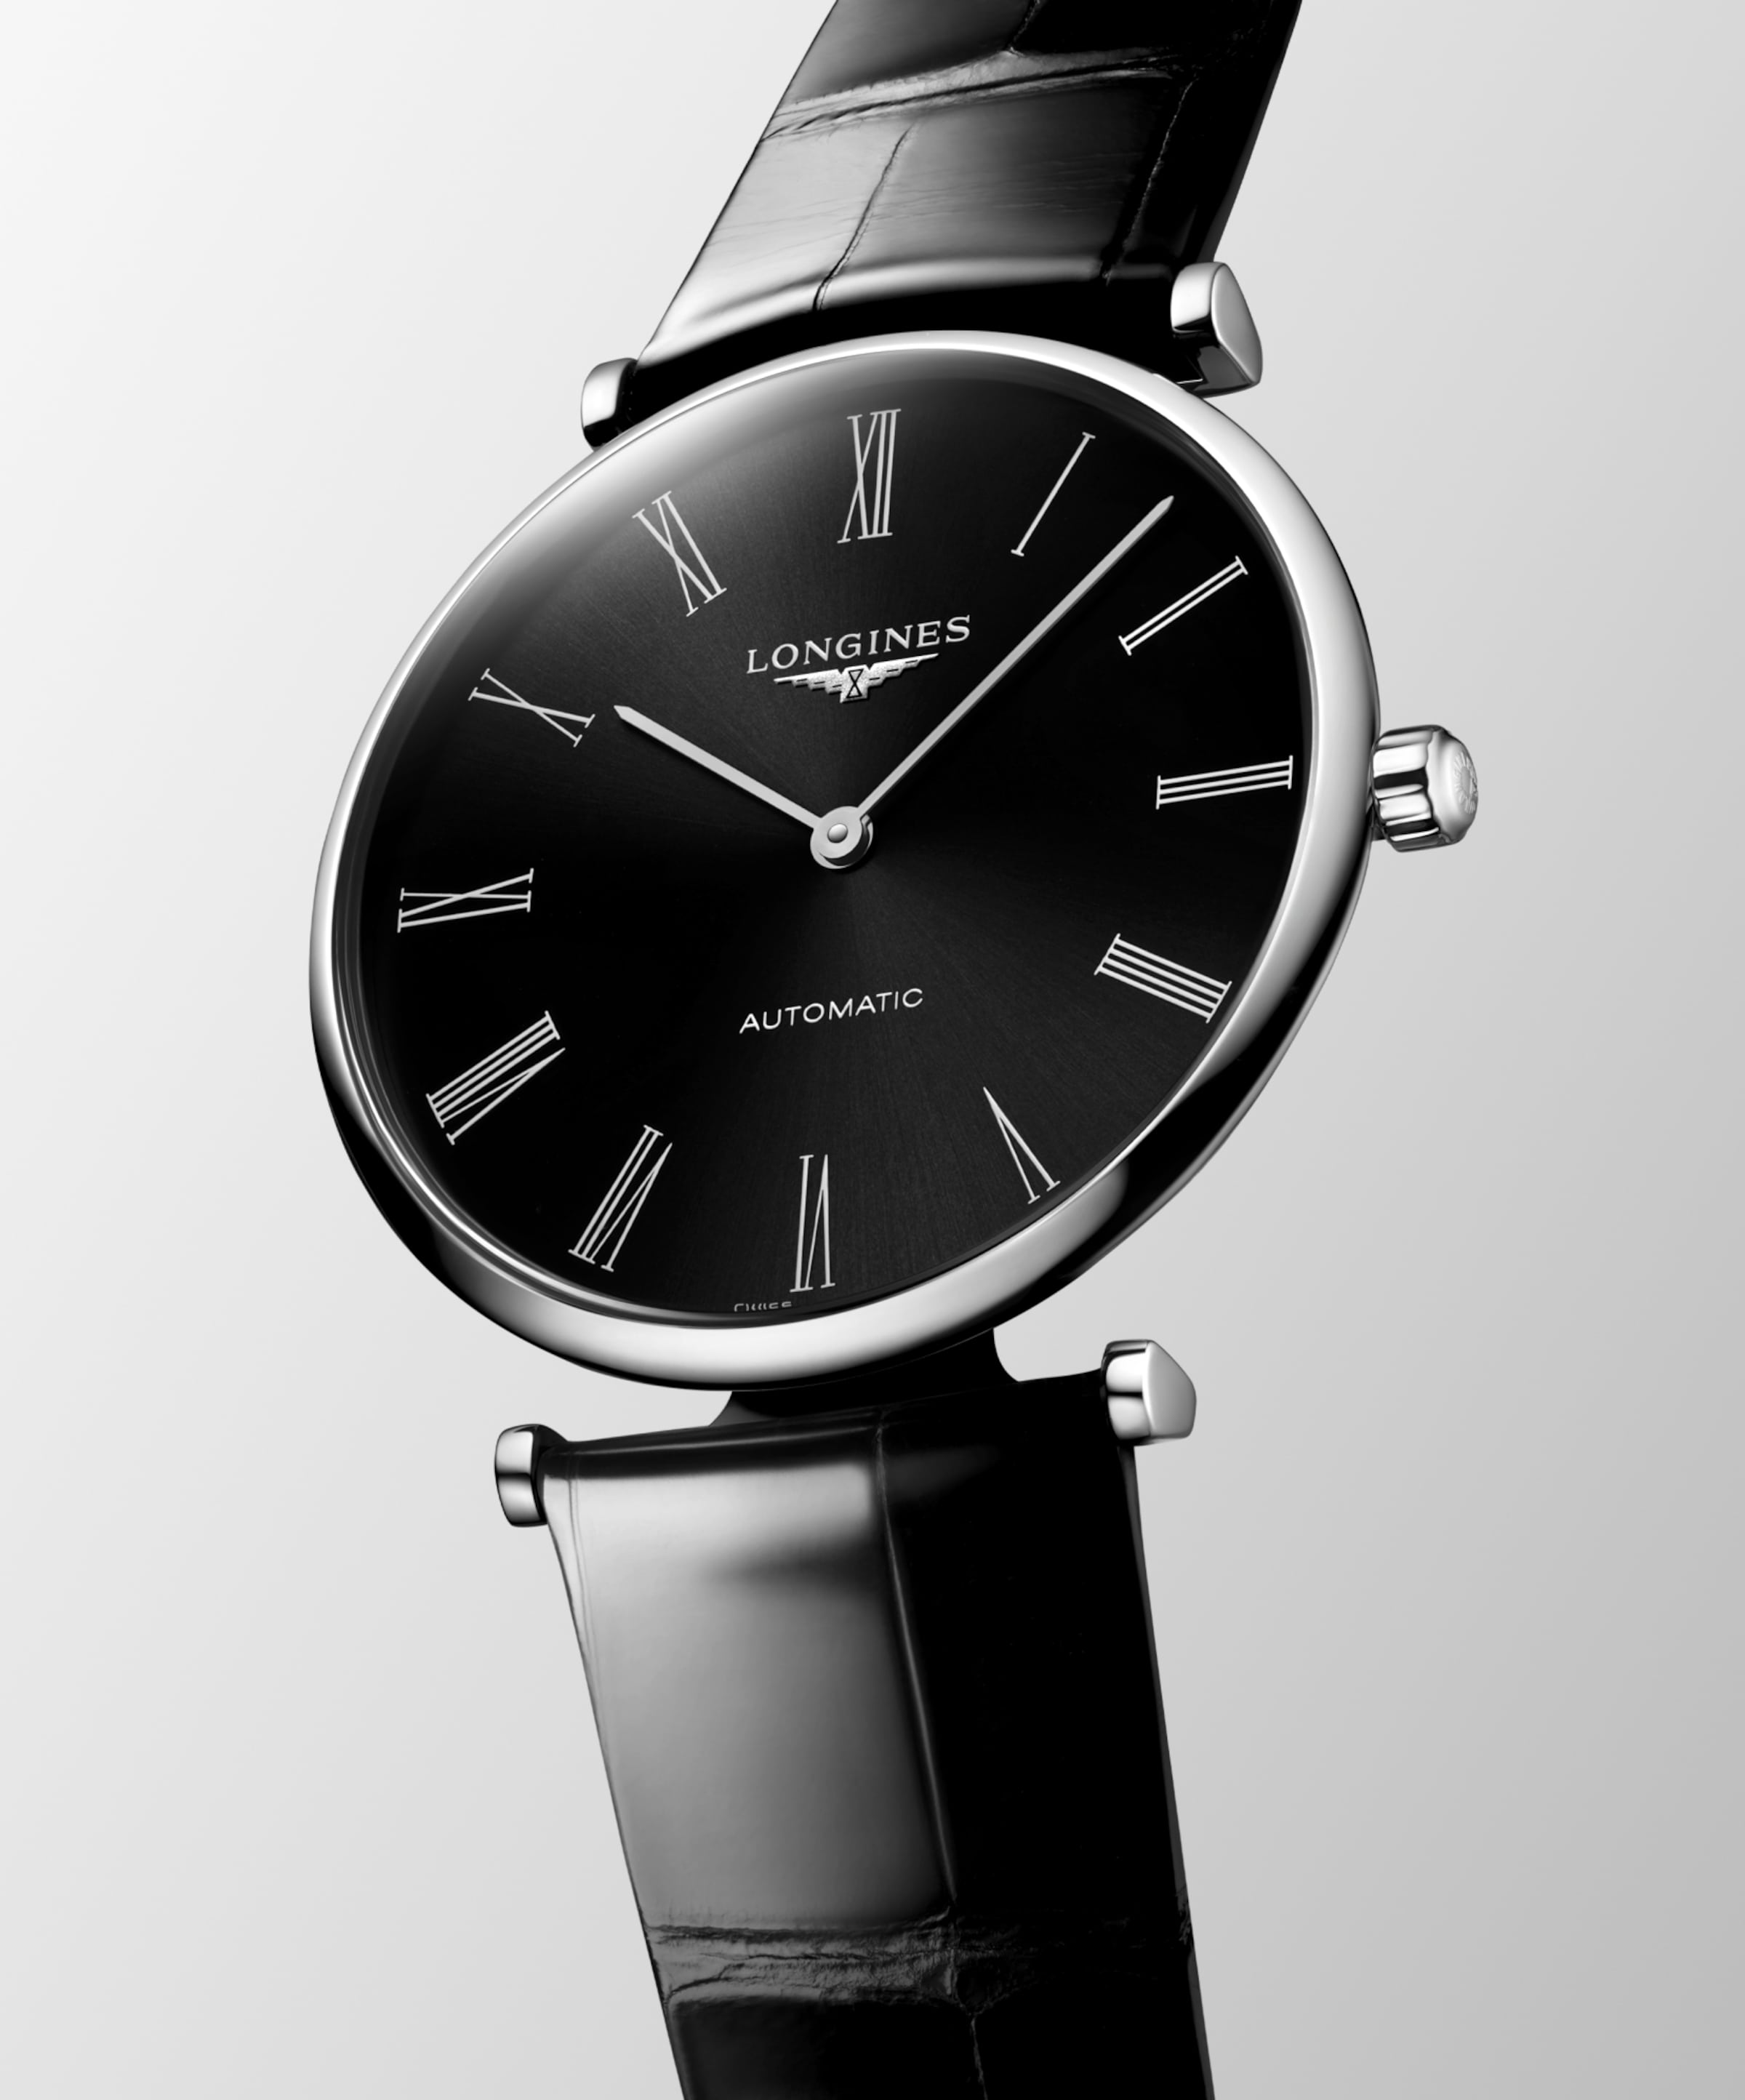 Longines LA GRANDE CLASSIQUE DE LONGINES Automatic Stainless steel Watch - L4.918.4.51.2